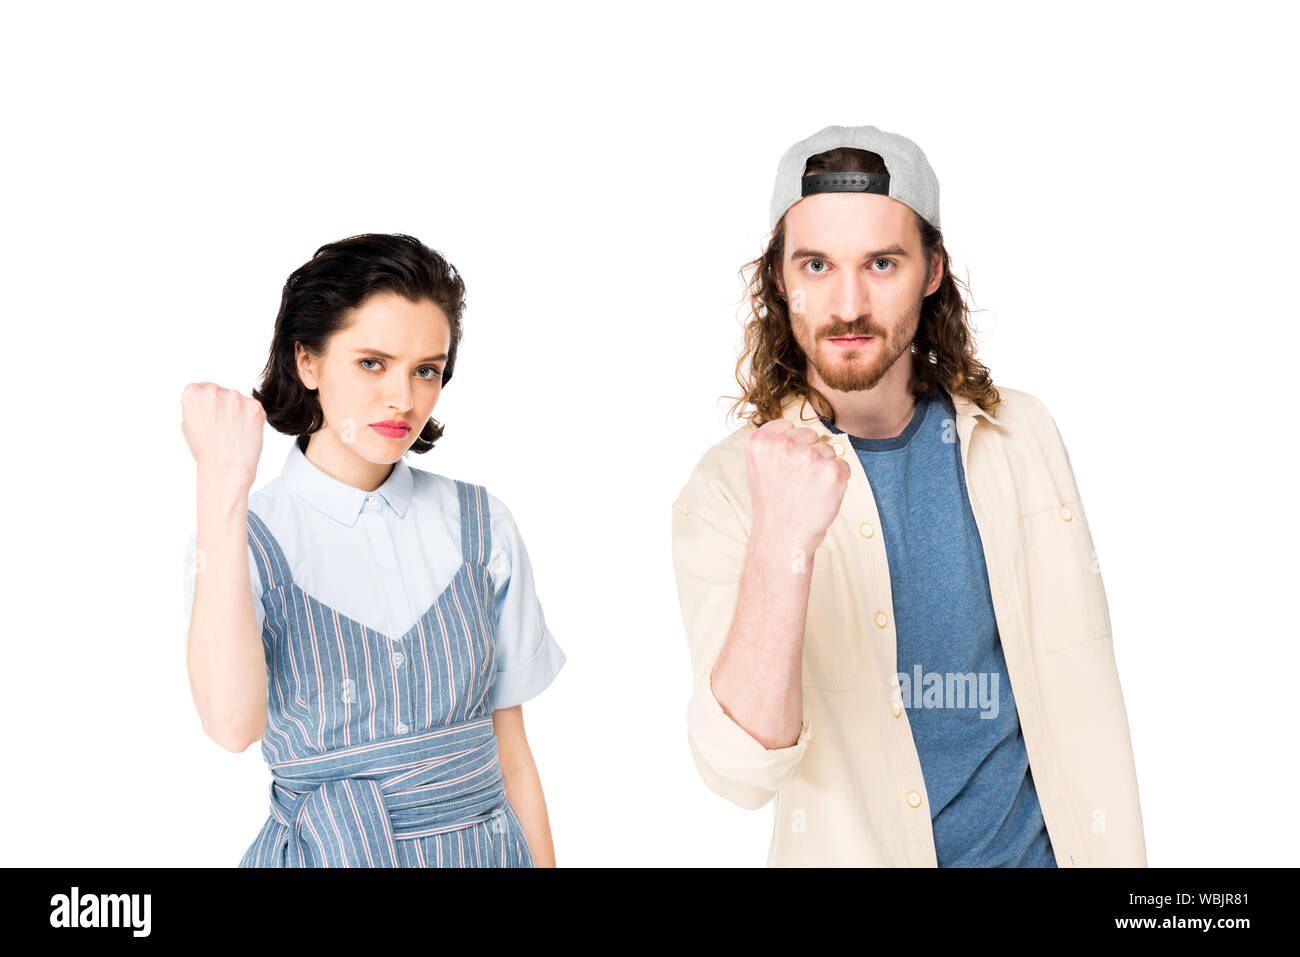 Jeune homme et jeune fille sérieusement et en montrant les poings at camera isolated on white Banque D'Images